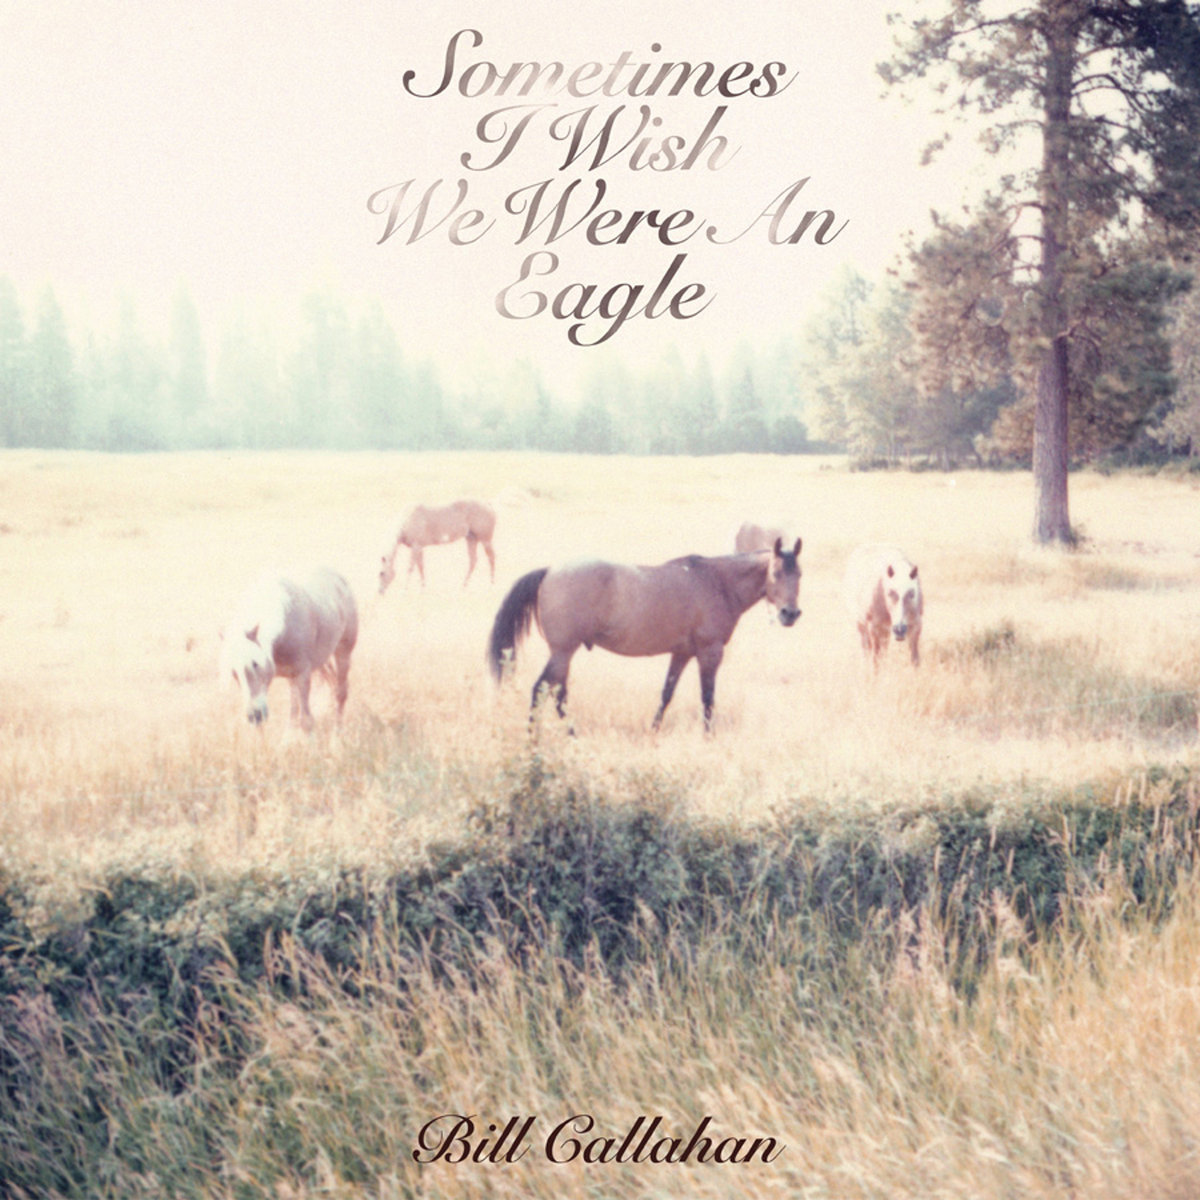 Bill Callahan — Jim Cain cover artwork